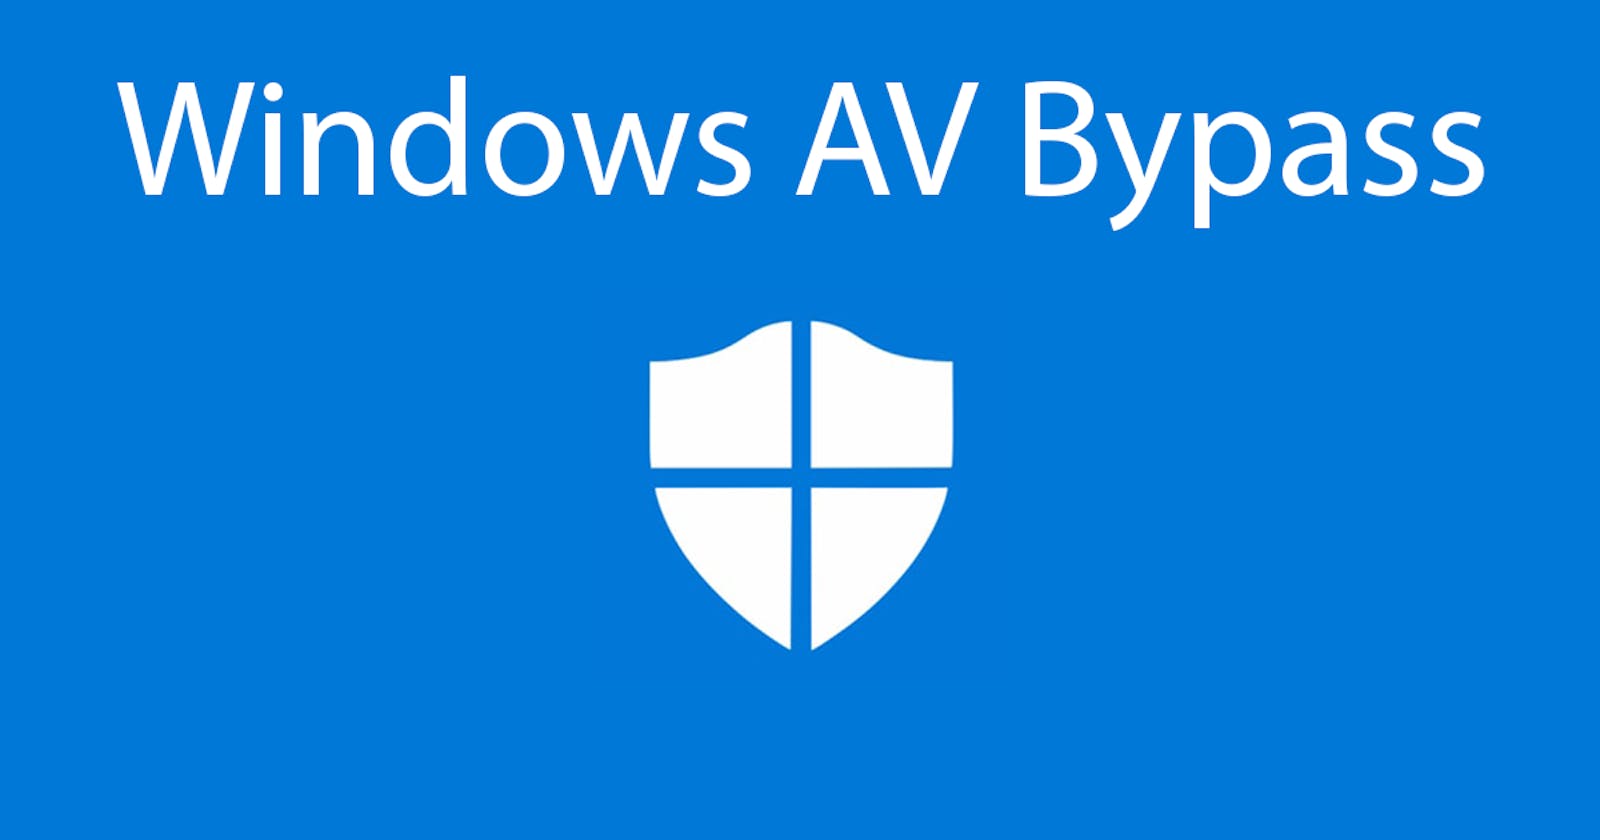 Basic Windows AV Bypass - Part 1 - Windows Environment